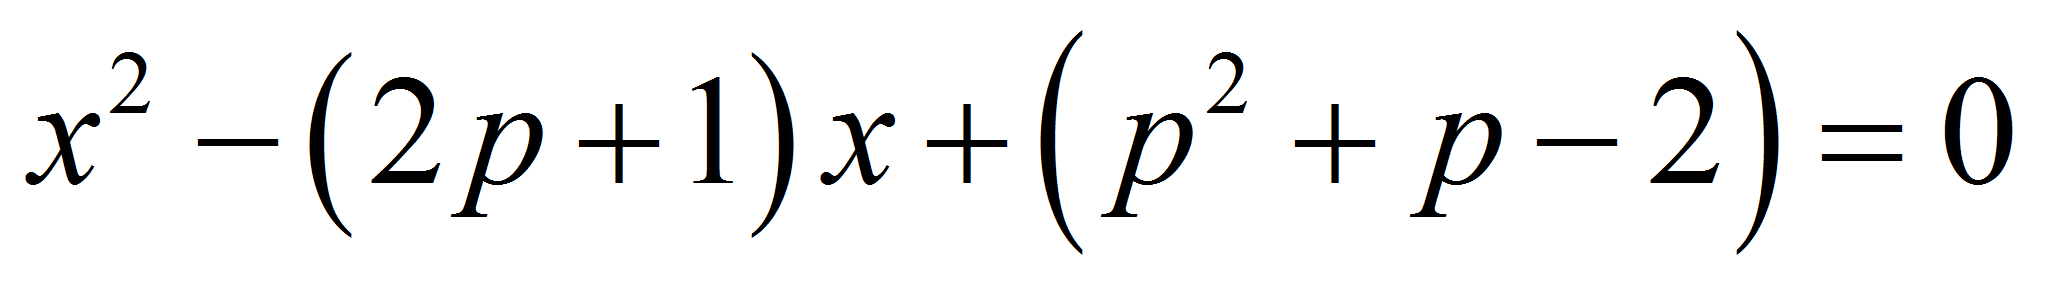 Сложное математическое выражение. Сложное математическое уравнение. Самое сложное уравнение в мире. Очень сложное уравнение. Самоеисложное уравнение.